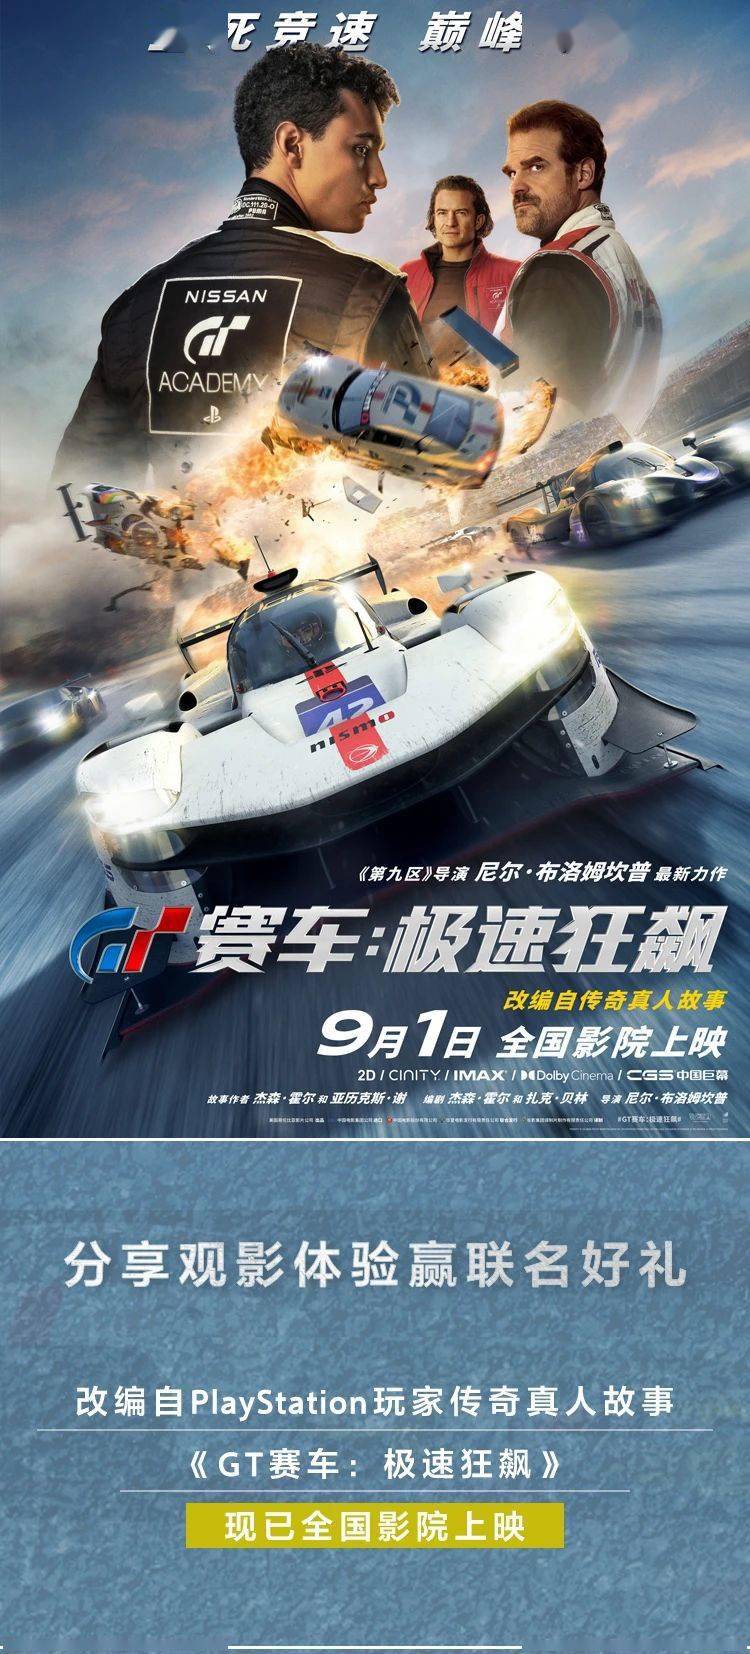 赛车电影《GT 赛车：极速狂飙》今日国内影院上映